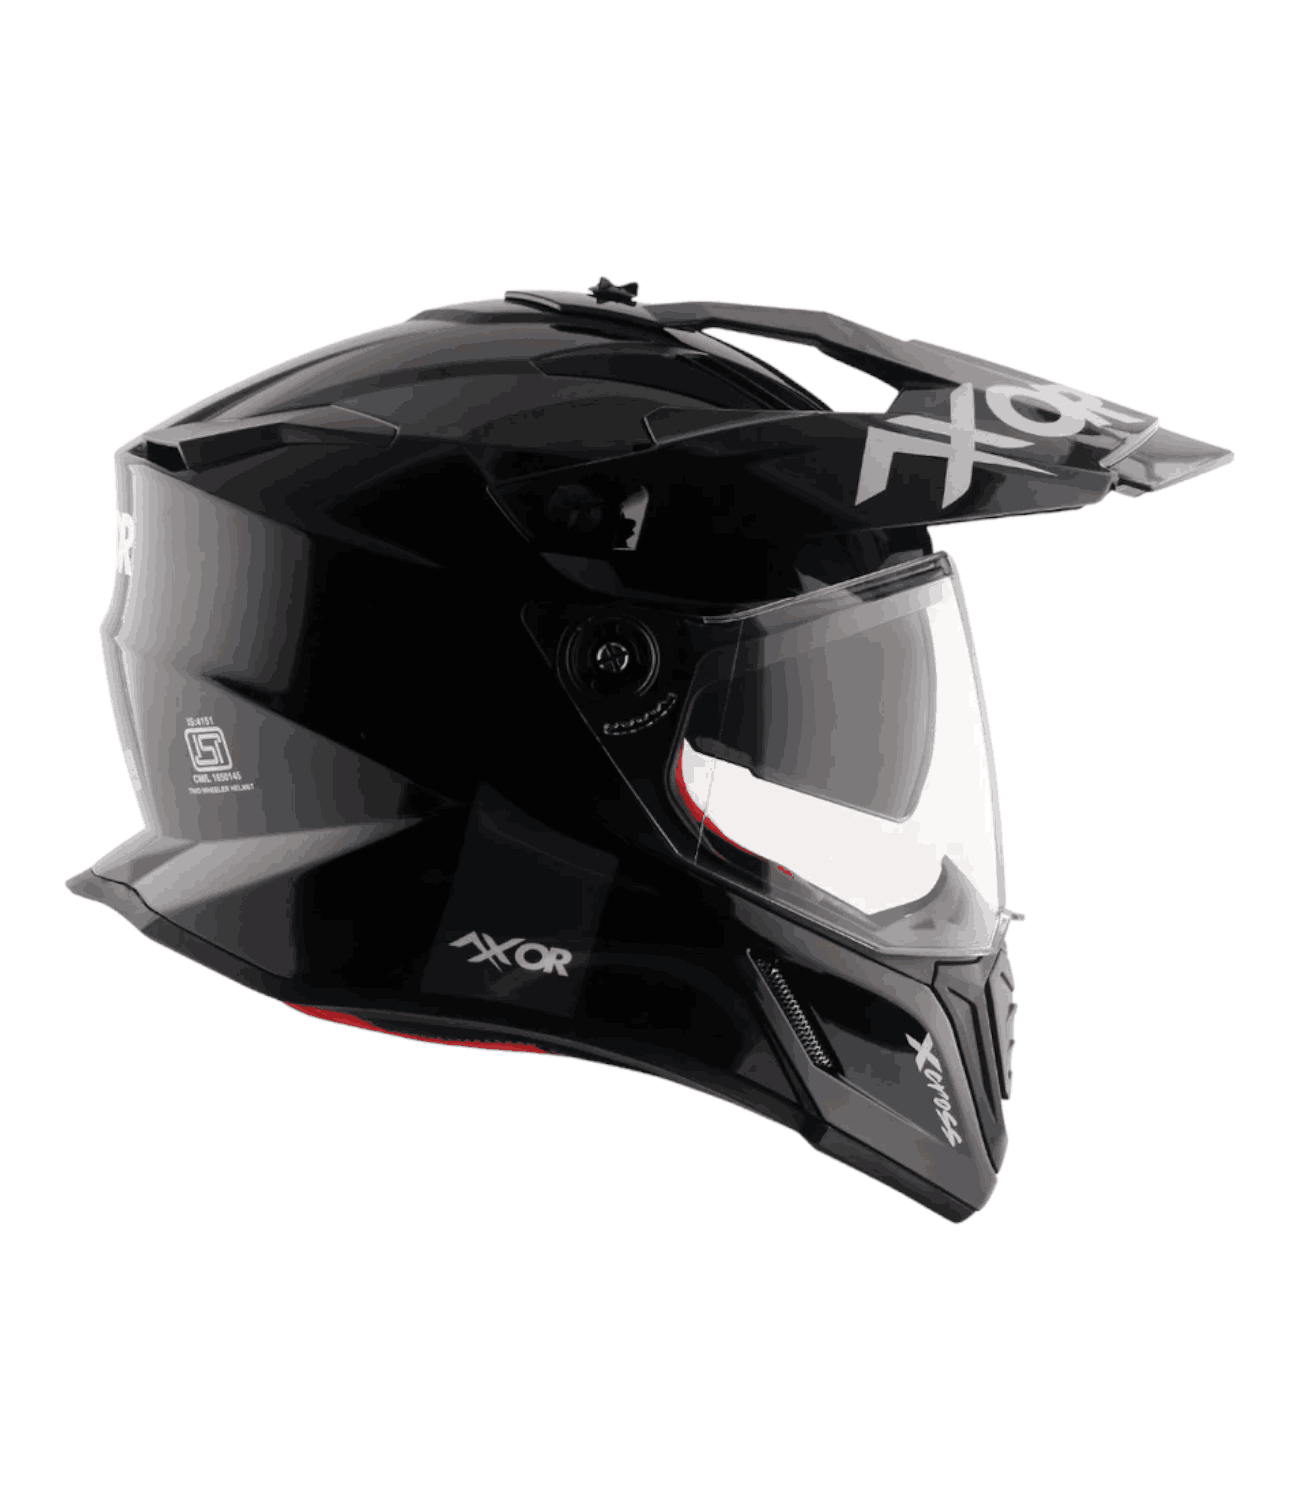 Axor X-Cross Dual Visor Helmet Black